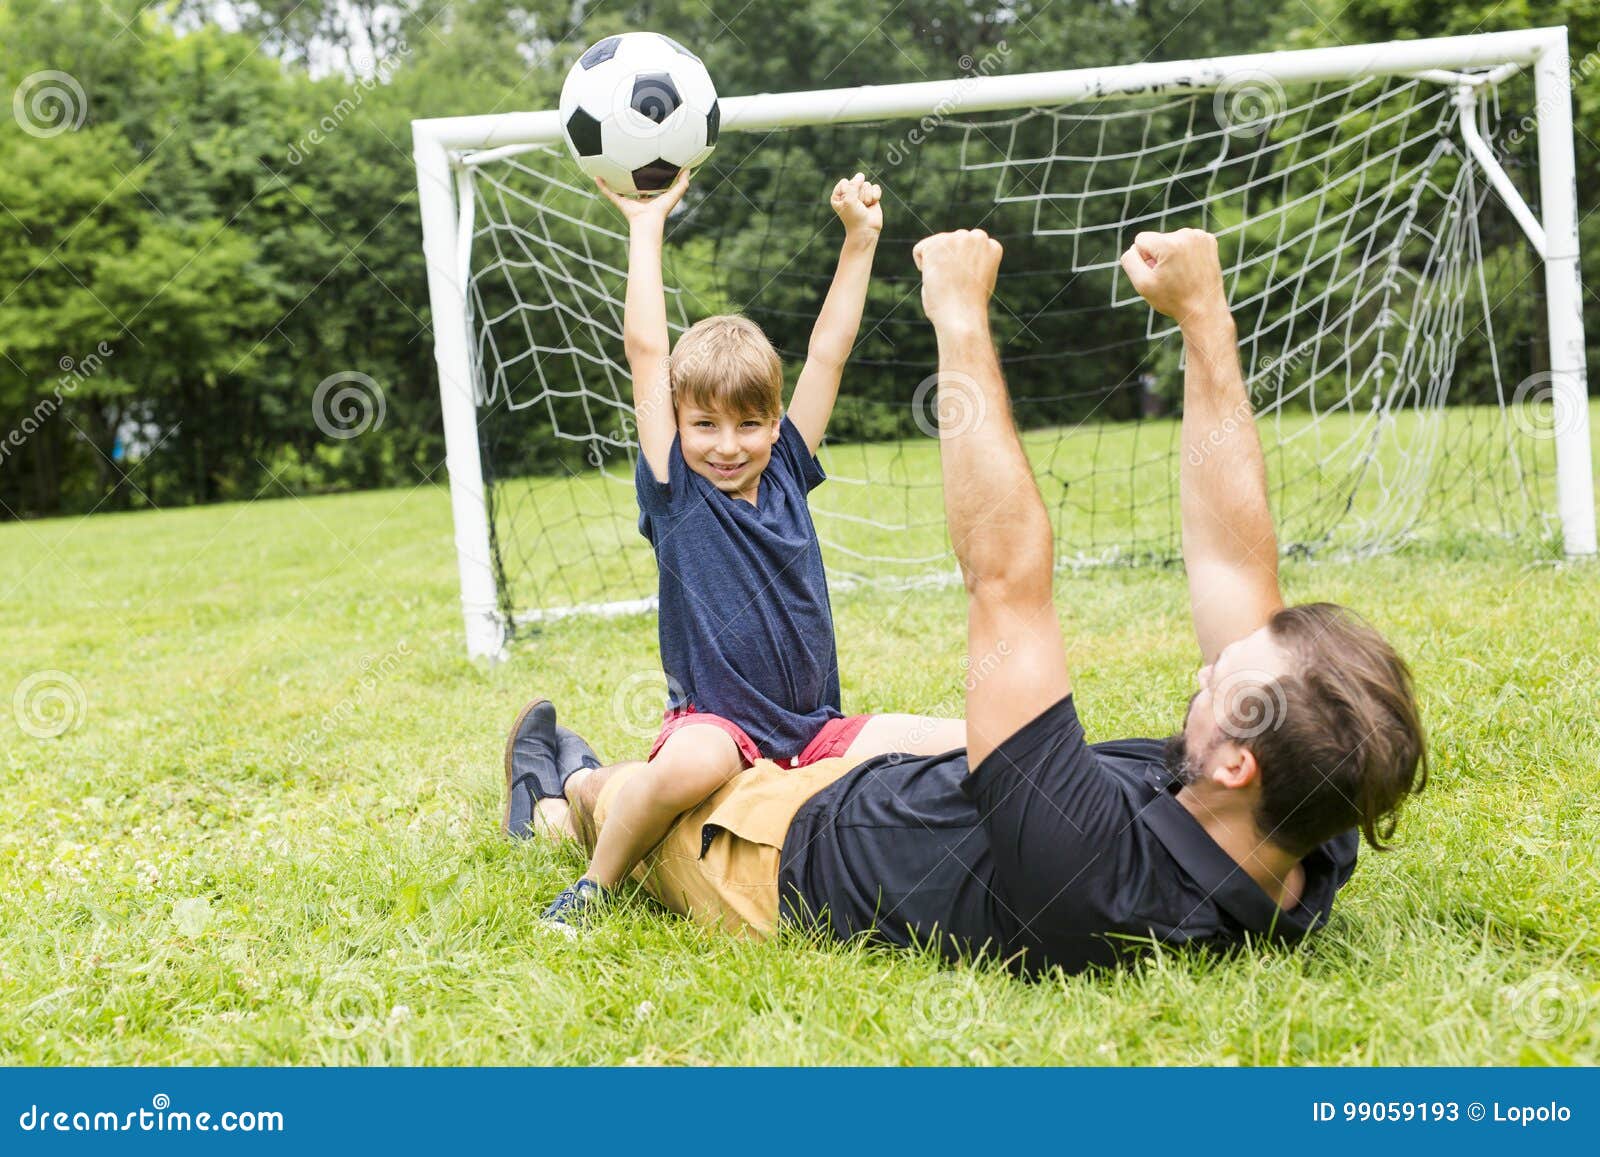 Папа играет в футбол. Футбол с папой. Мальчик с папой играет в футбол. Папа и сын футбол. Семья на футбольном поле.